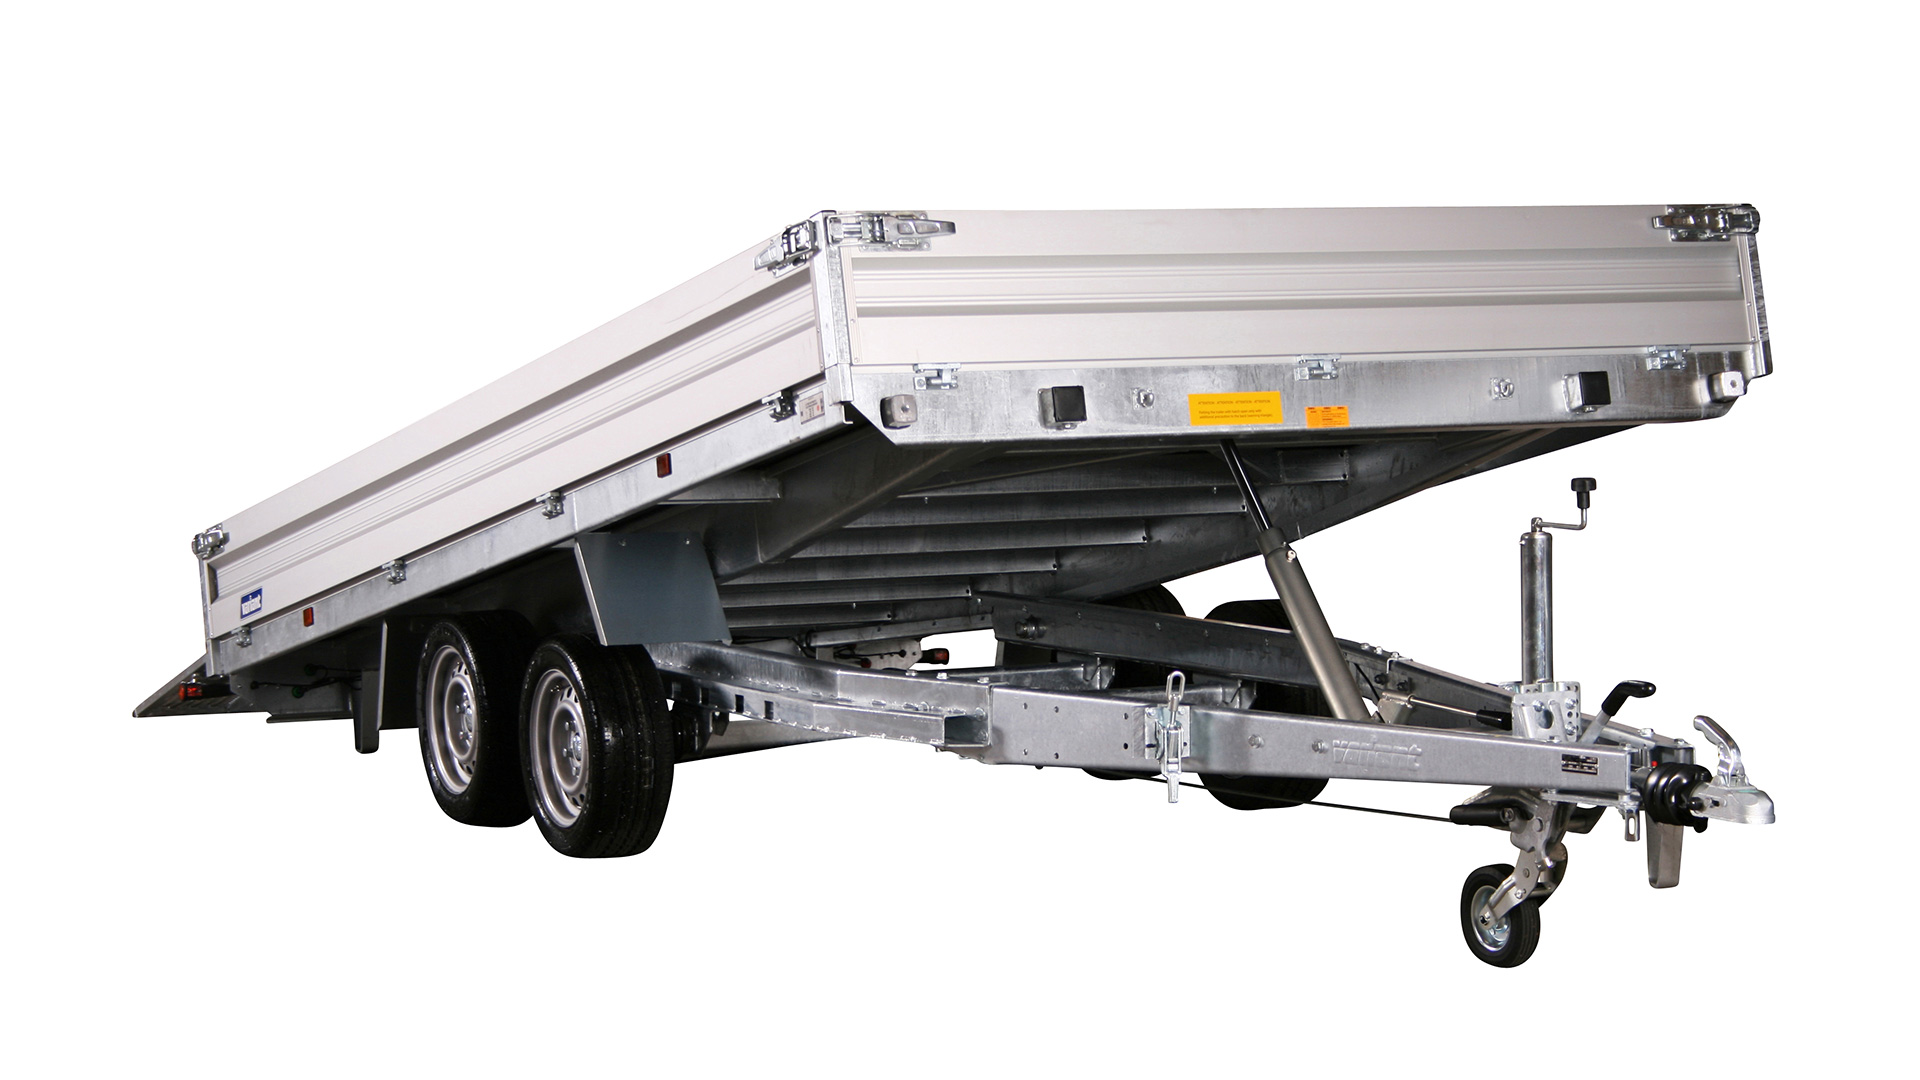 Variant PKW Anhänger Universaltransporter 3521 U5 - kippbar3500 kg, Ladefläche 5,20 x 2,10 m, mit Bordwände